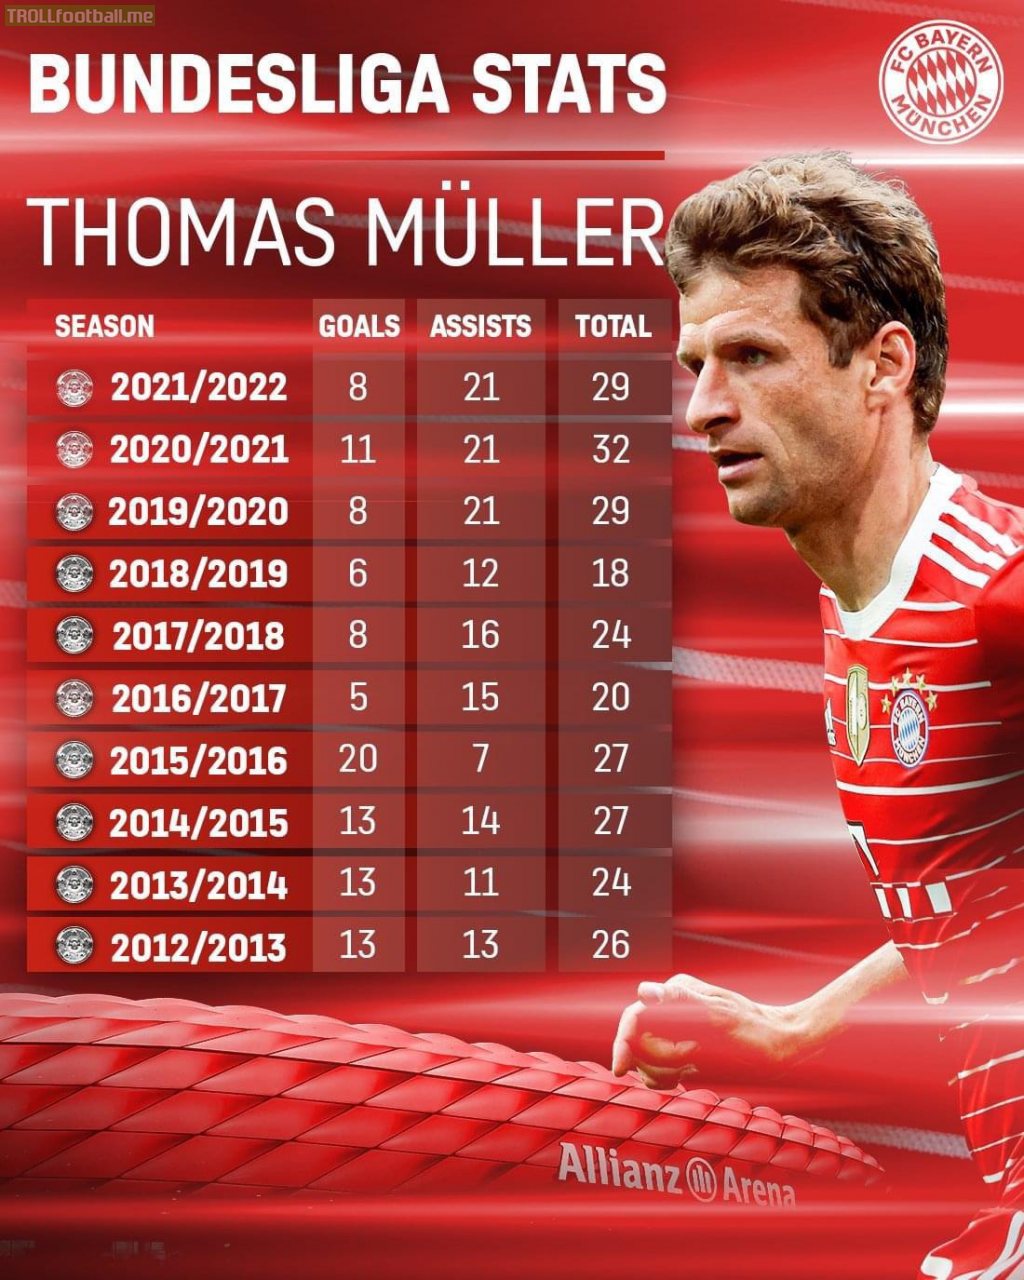 Stats of the last 10 Bundesliga seasons of Thomas Müller